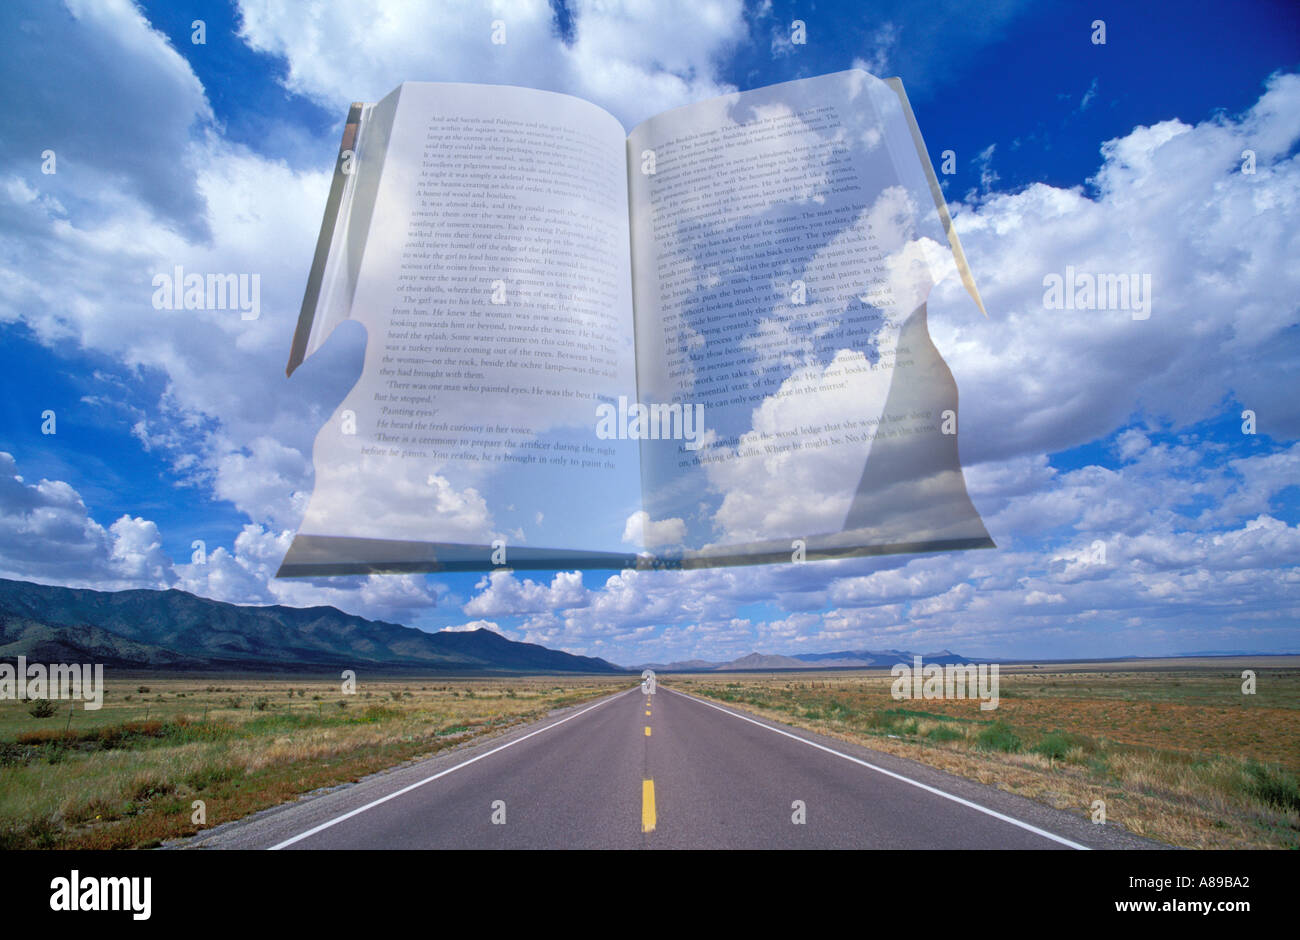 Buch in Wolken über einer öden Autobahn überlagert Stockfoto